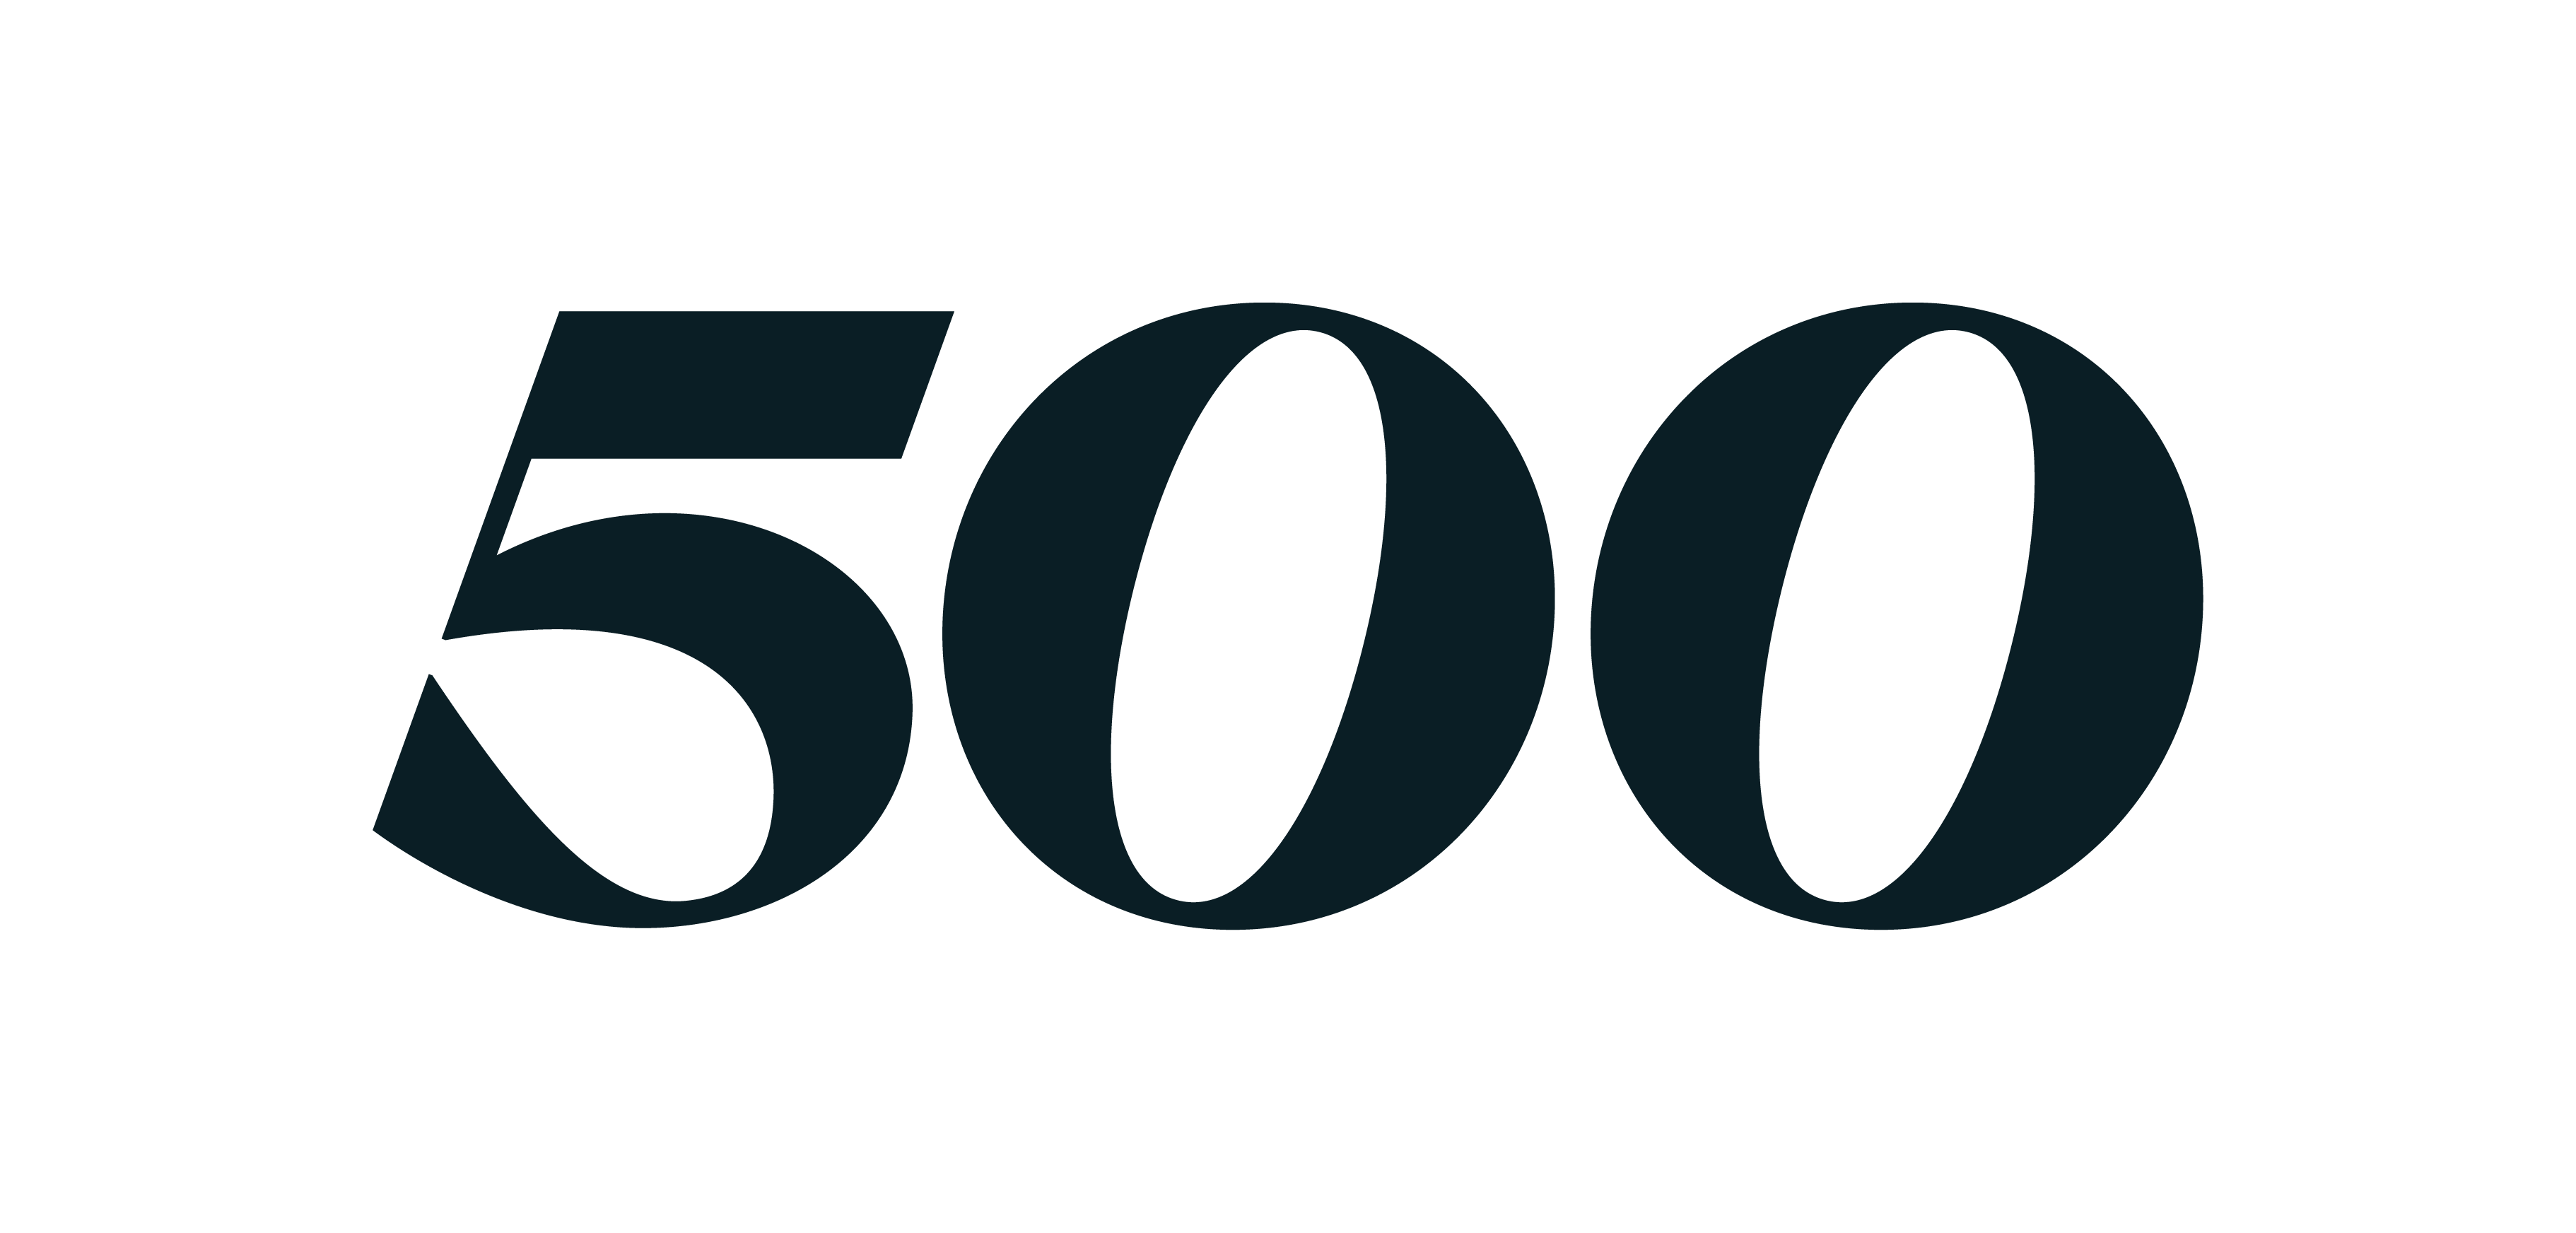 500 Ecosystems